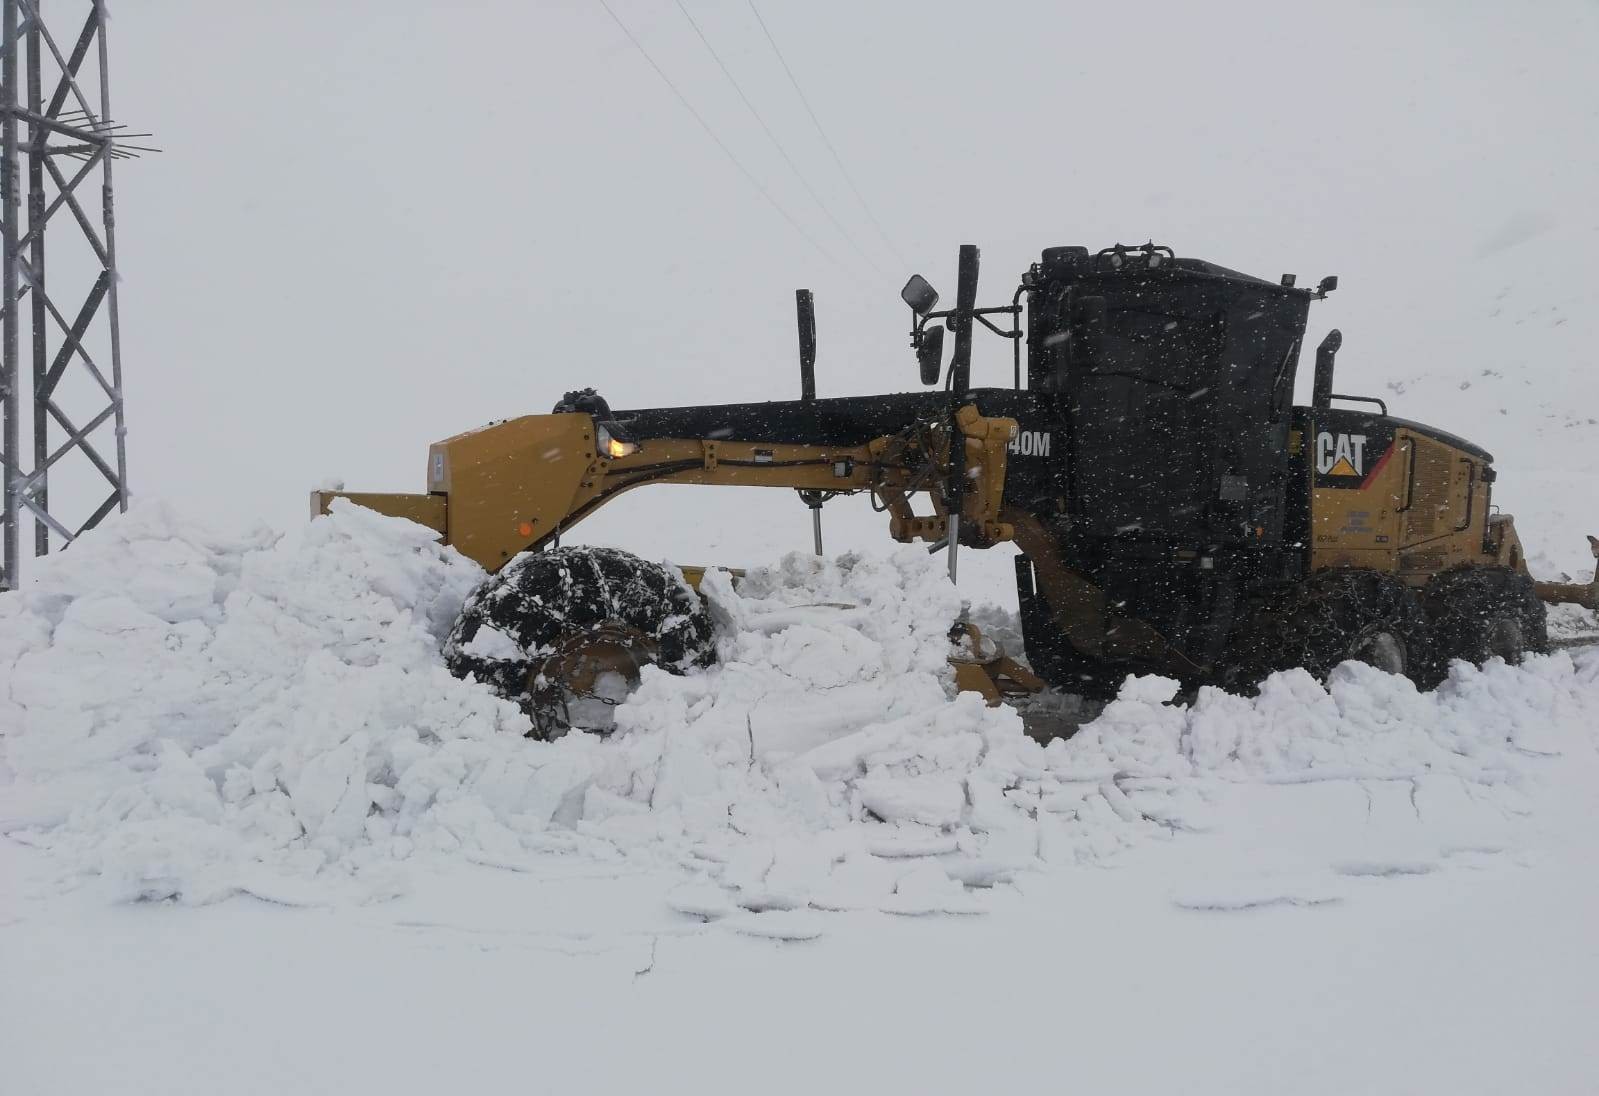 Batman’da kar yağışı nedeniyle kapanan köy yolları ulaşıma açıldı #batman